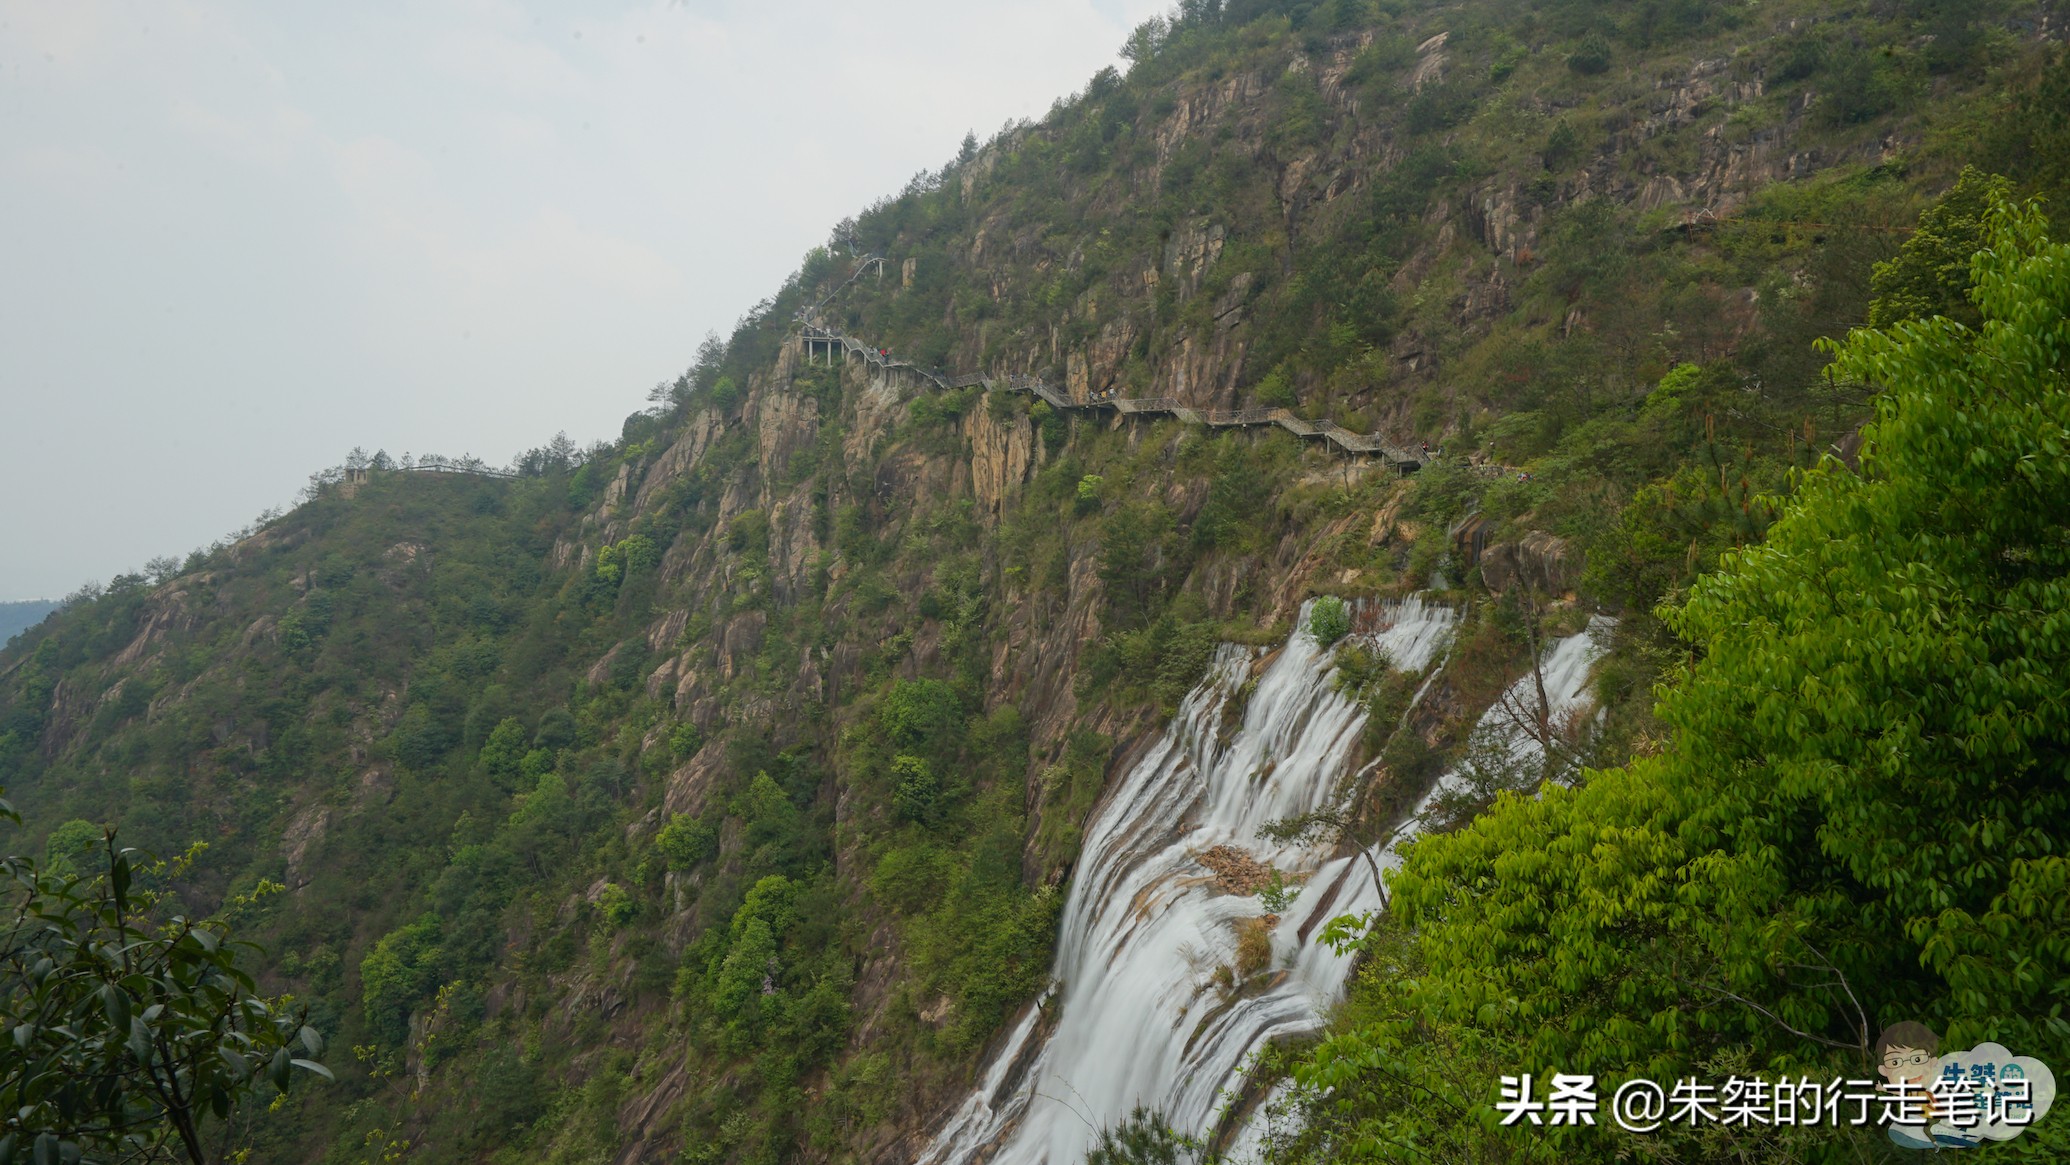 从断流到复流，积淀千年文化的“中华第一高瀑”用了六十多年时间